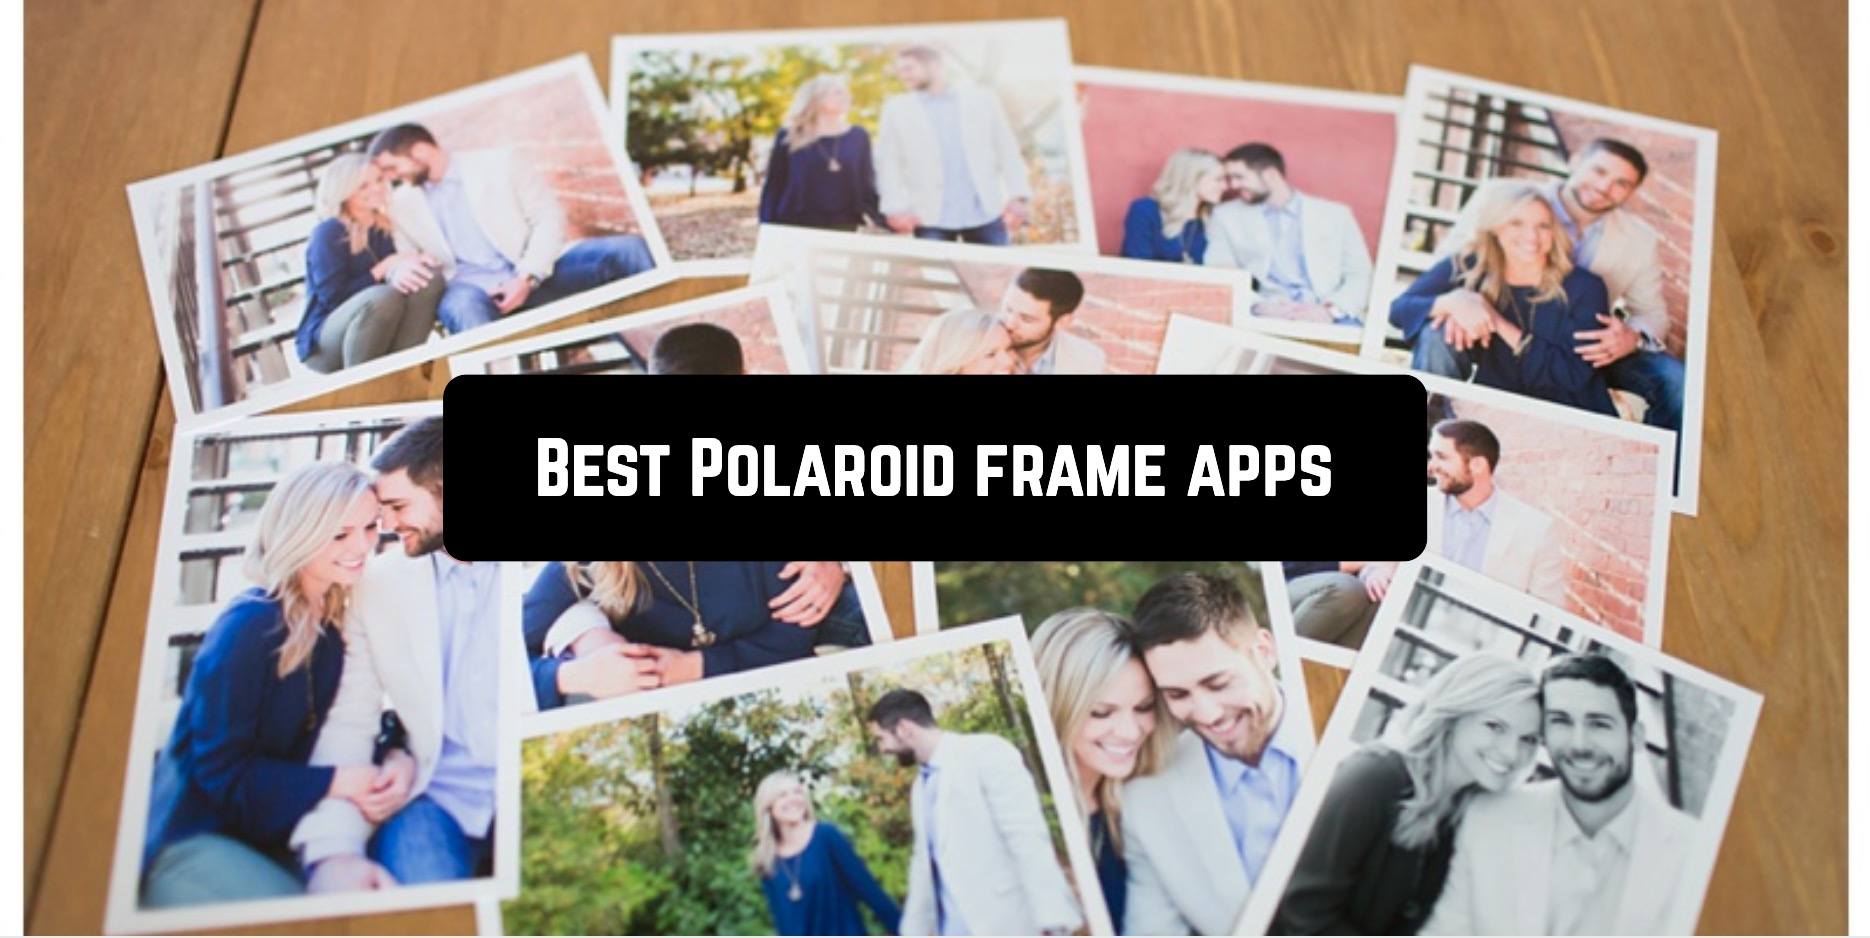 Best Polaroid frame apps